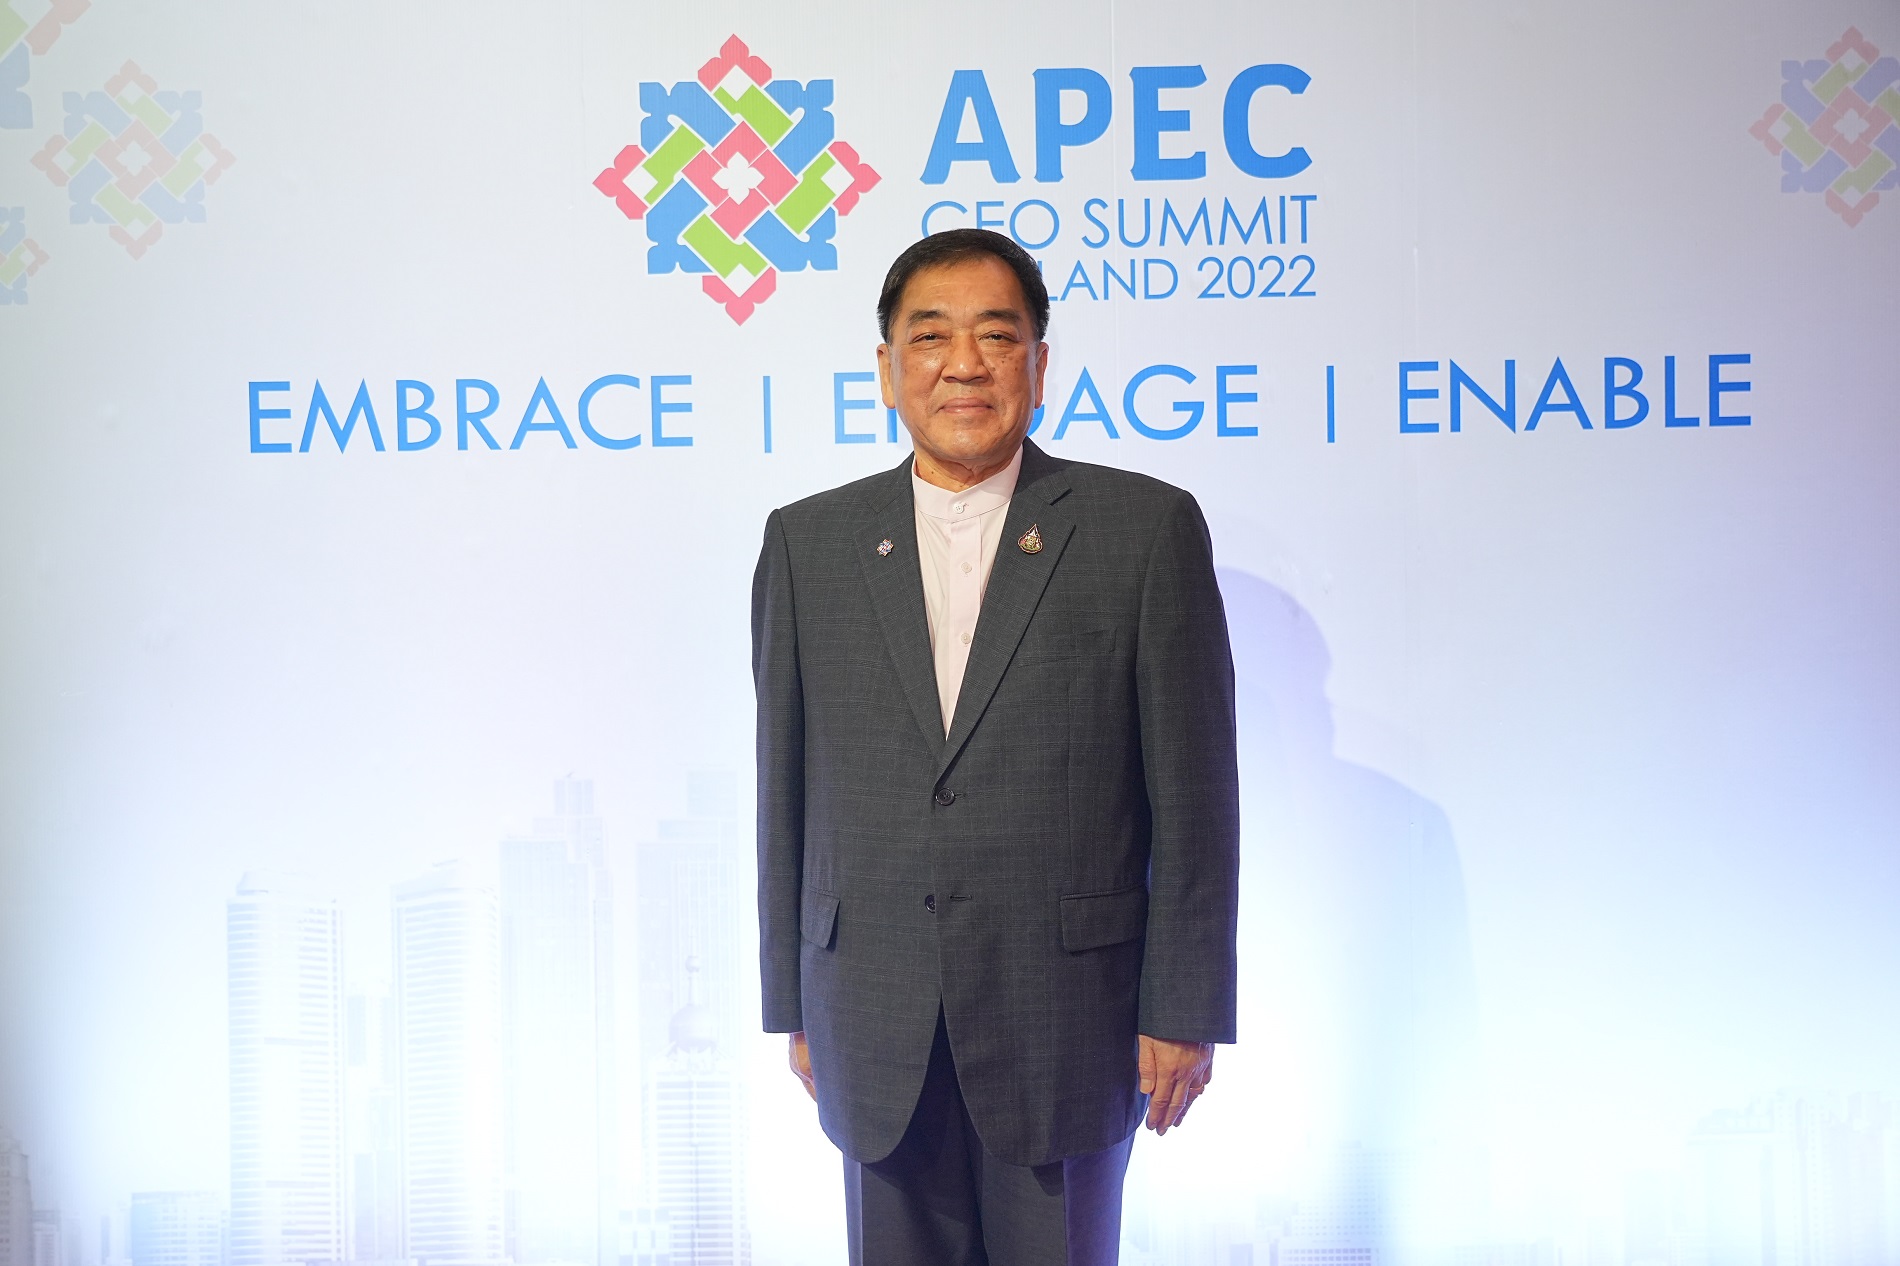 โอกาส ความก้าวหน้า และการเจรจาที่เกิดขึ้น ต่อการพัฒนาเศรษฐกิจไทย หลังการประชุม APEC CEO Summit 2022